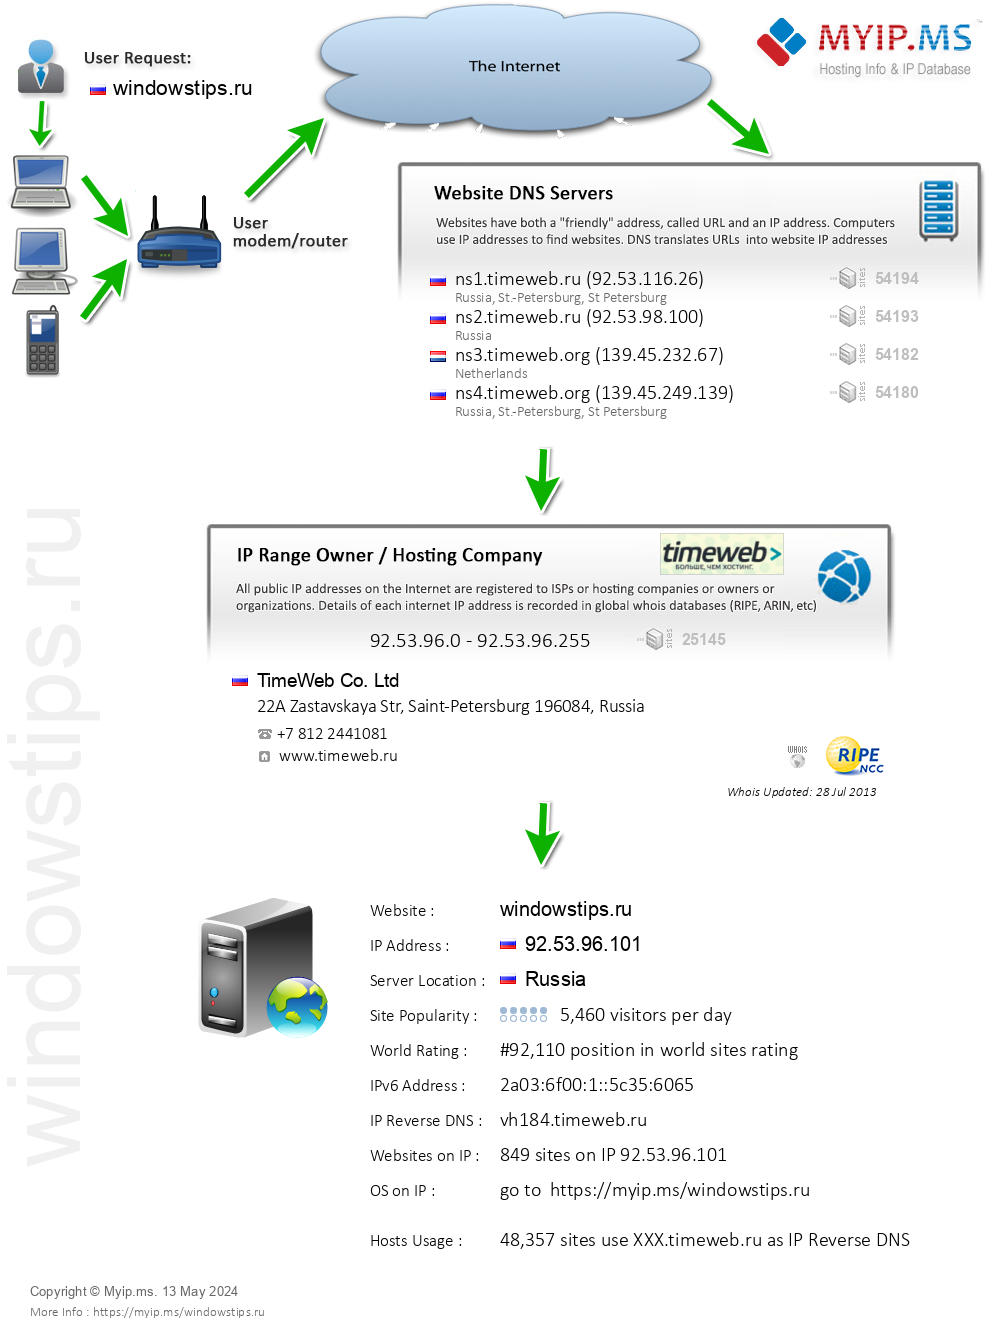 Windowstips.ru - Website Hosting Visual IP Diagram